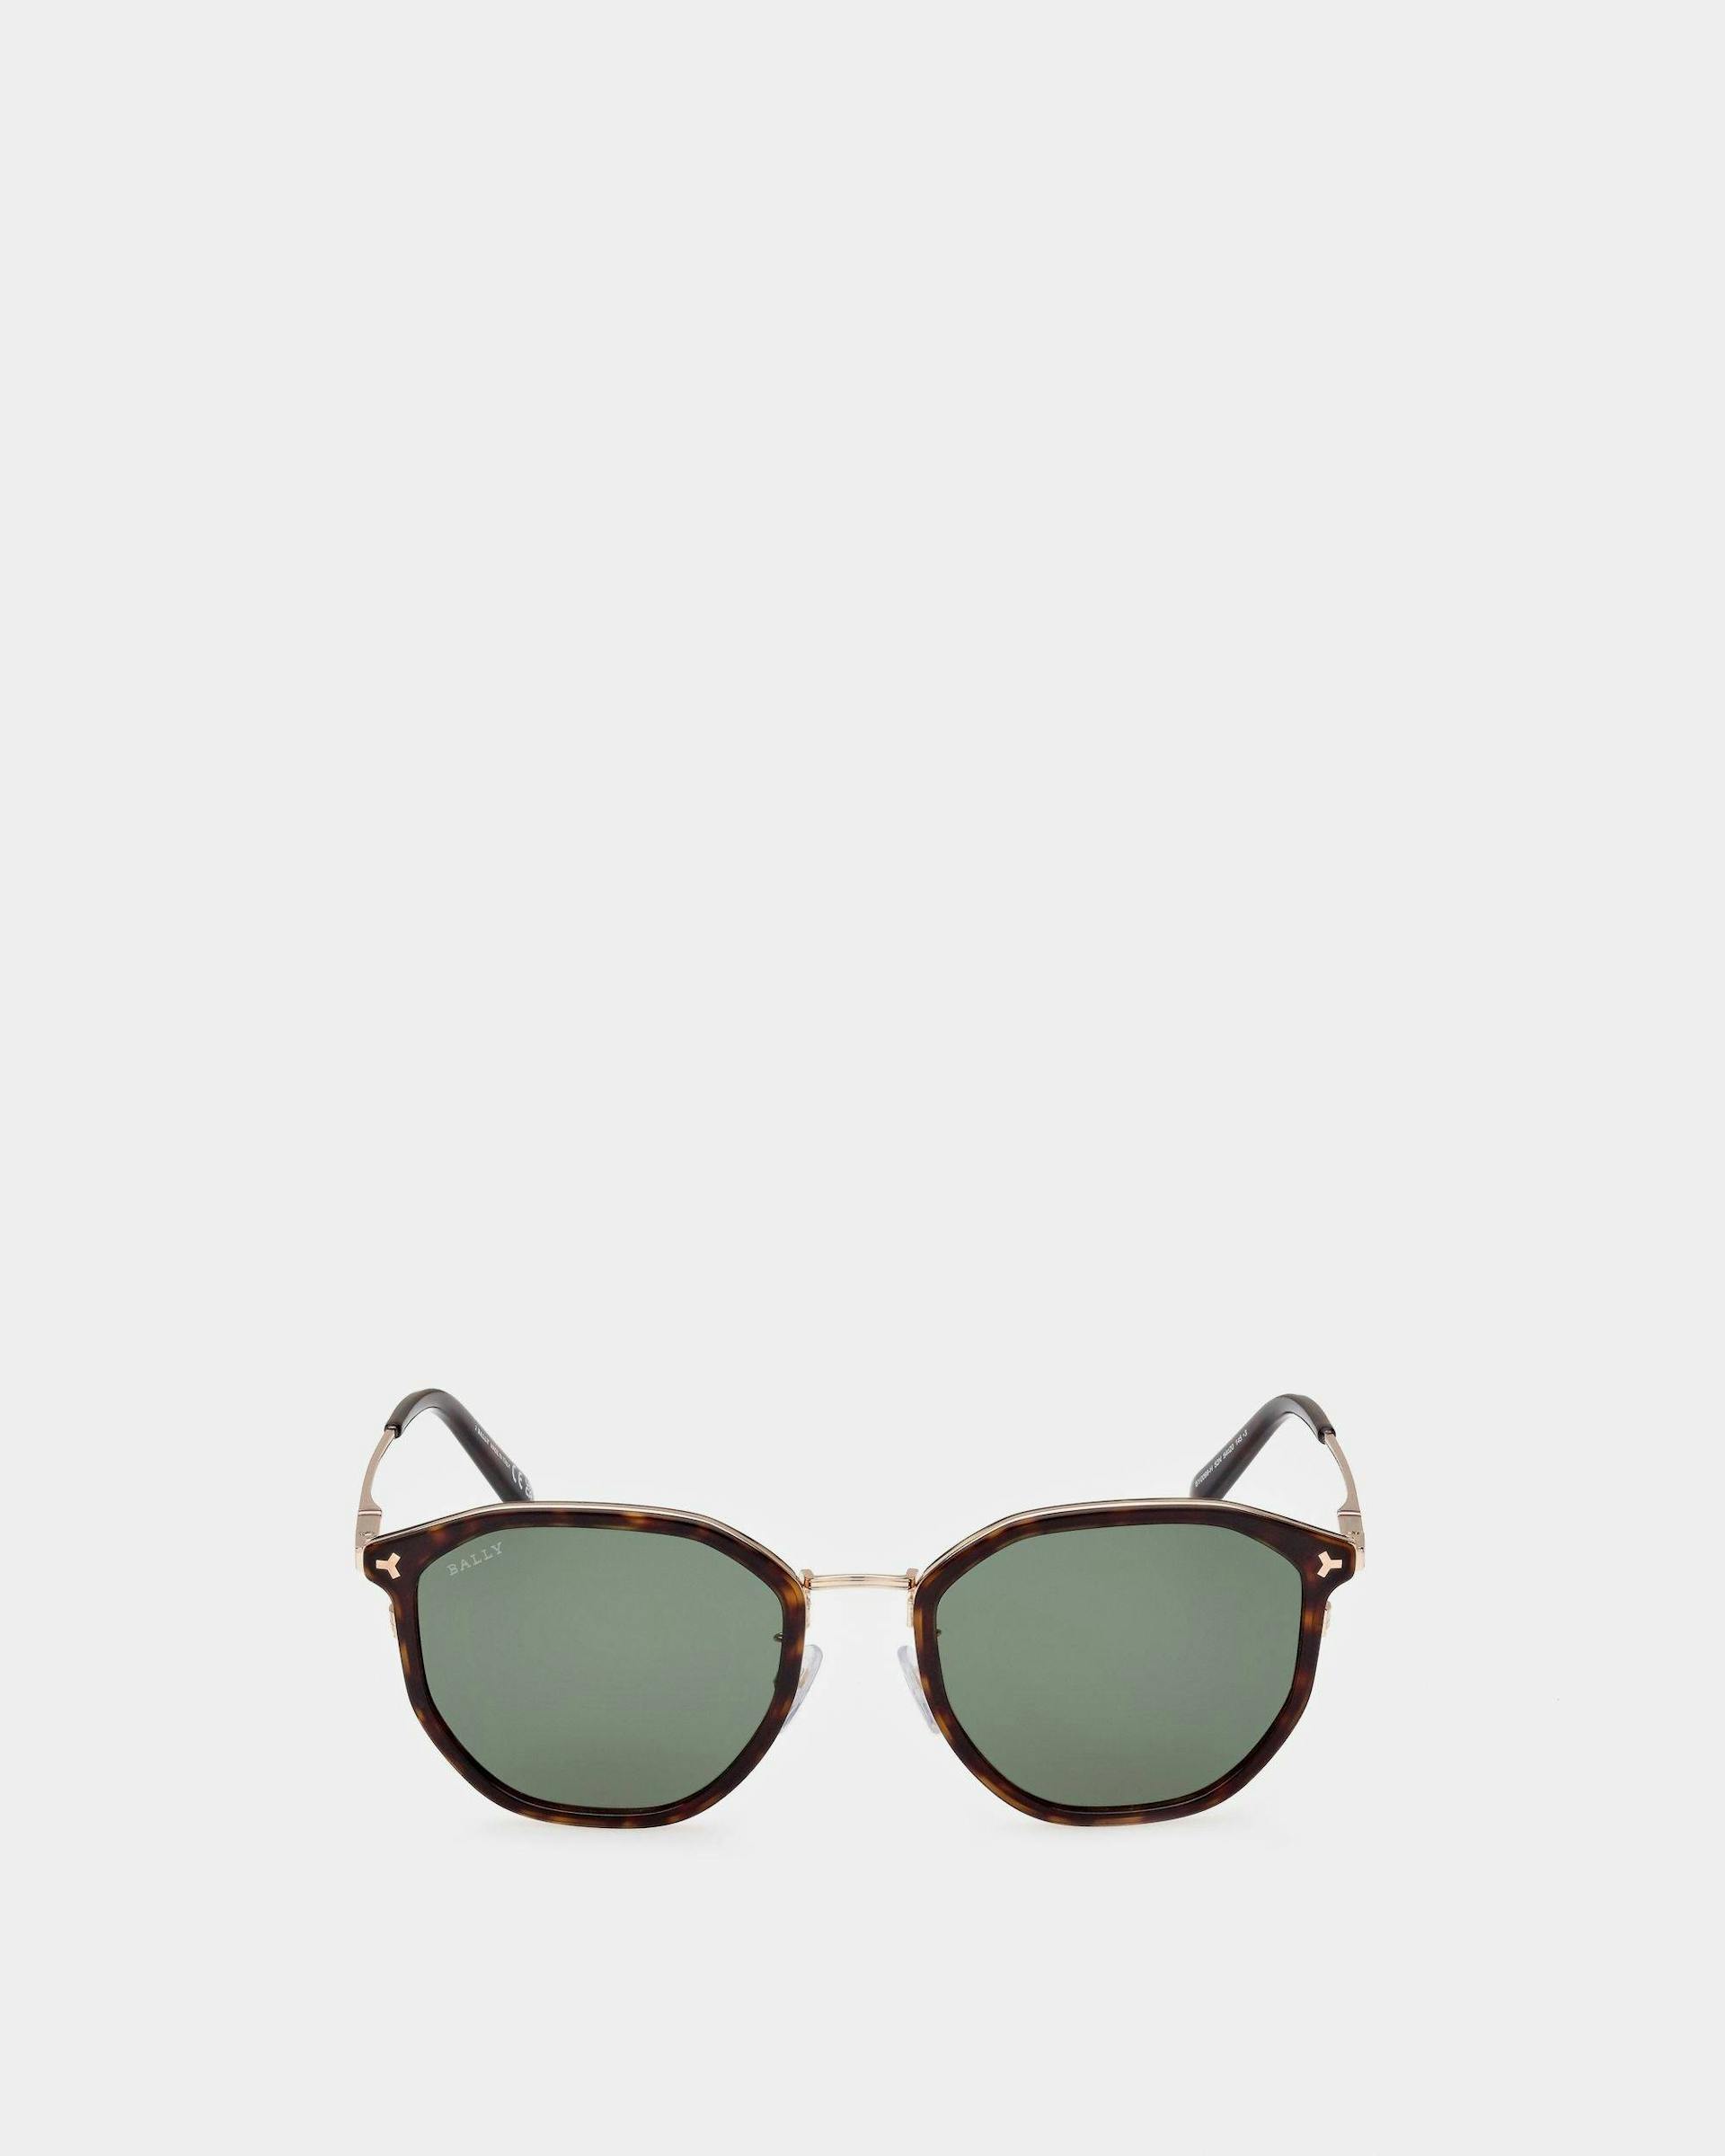 Languard Metal & Acetate Sunglasses In Havana Brown & Green Lenses - Men's - Bally - 01